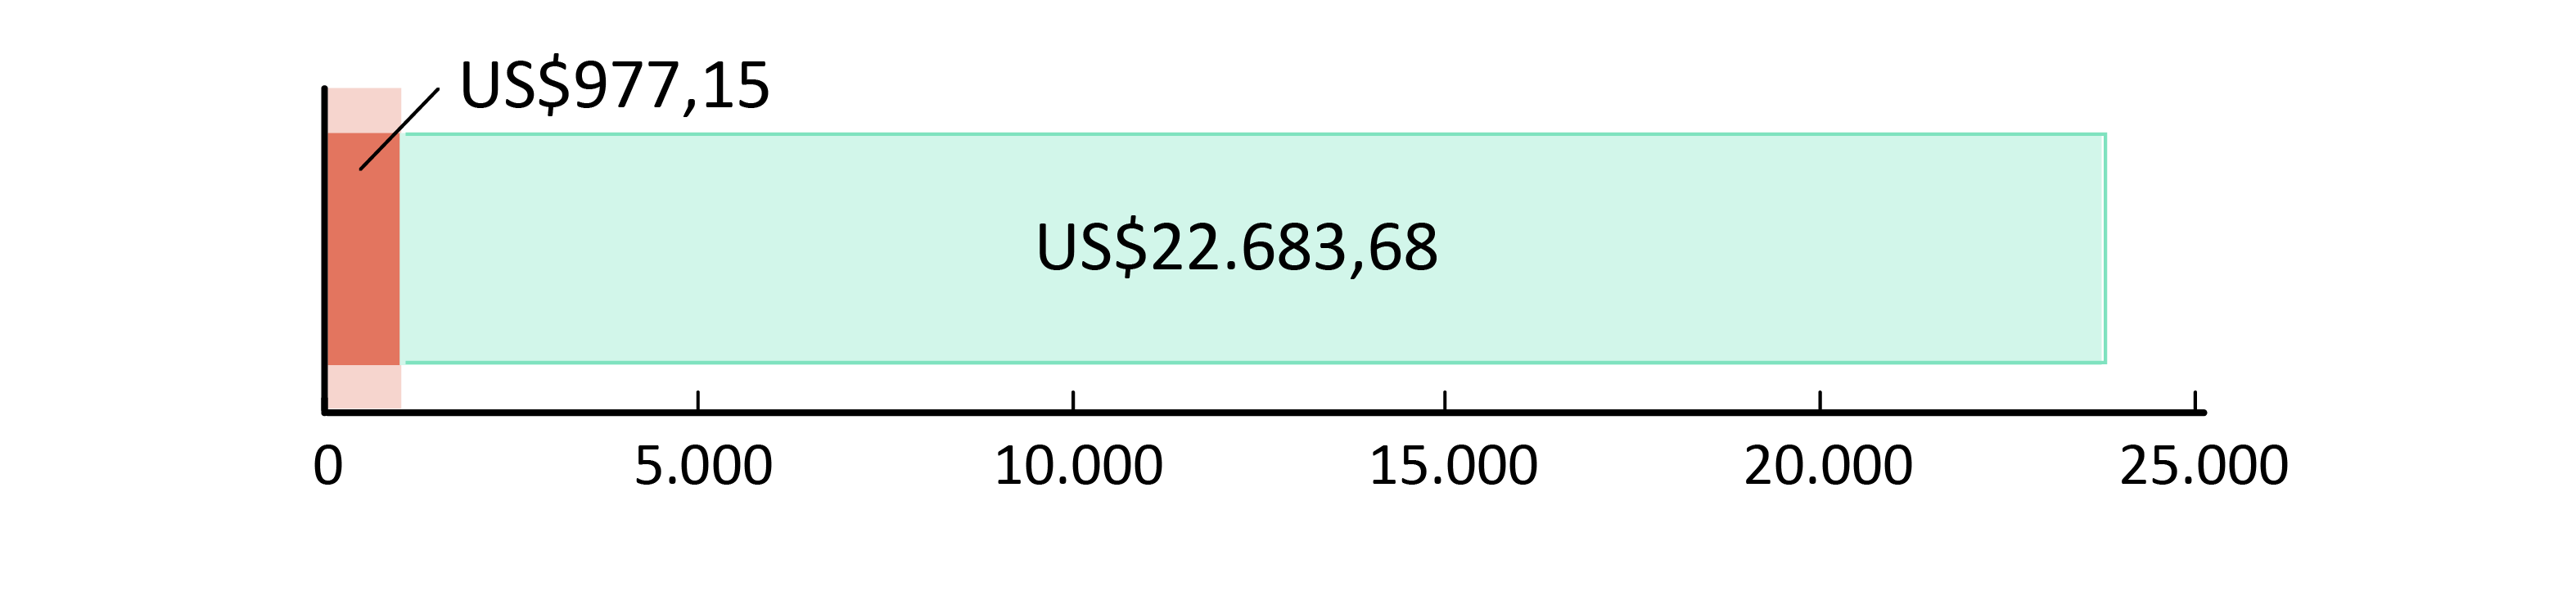 US$977,15 fueron usados; US$22.683,68 restan